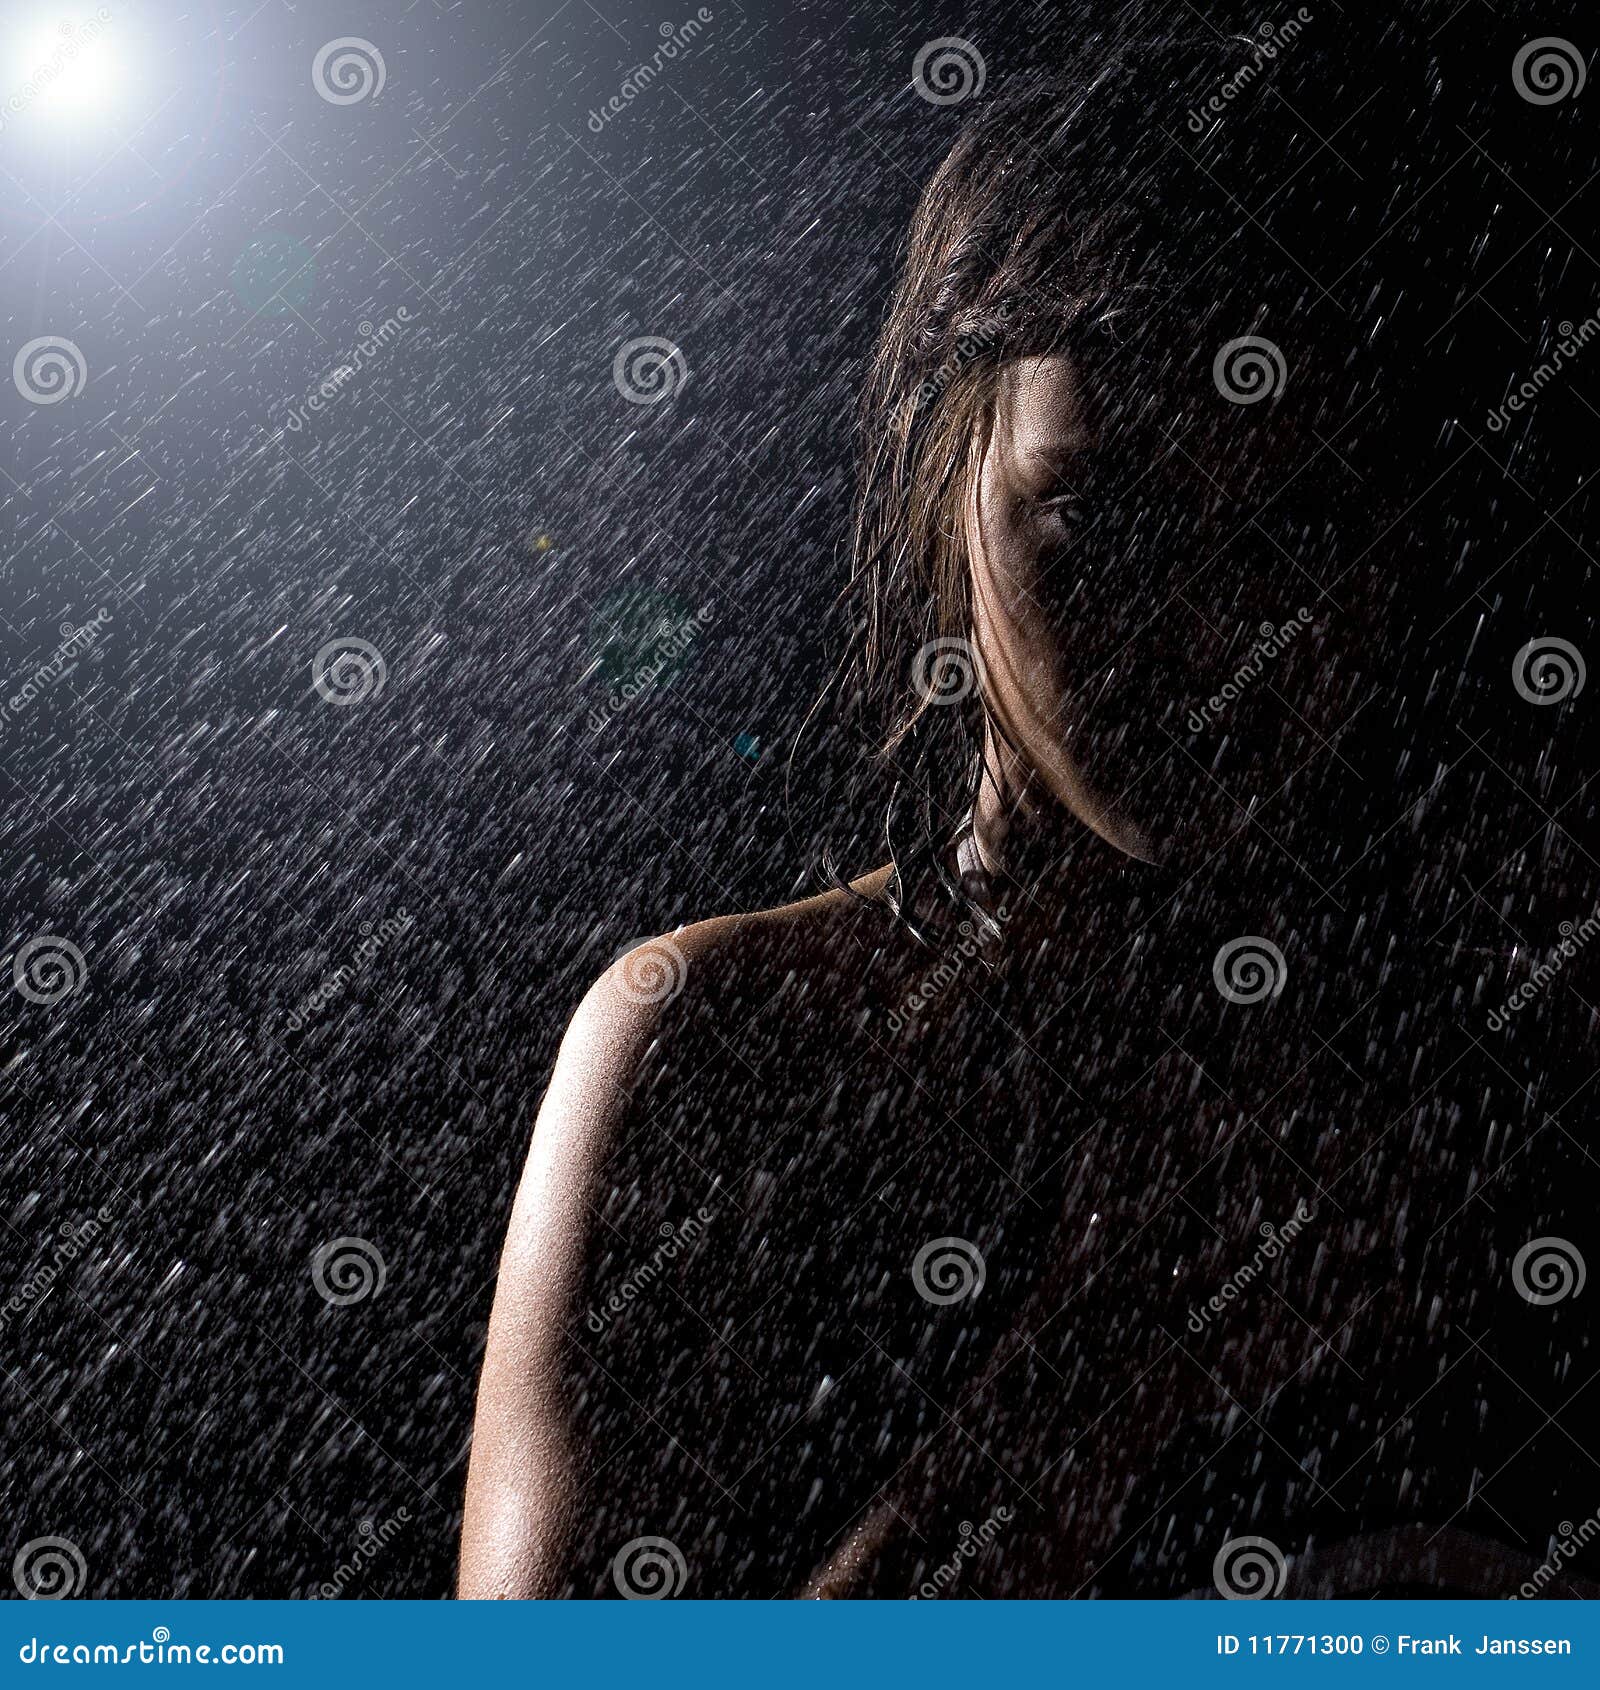 女孩在雨中哭的图片_伤感图片 - 伤感说说吧